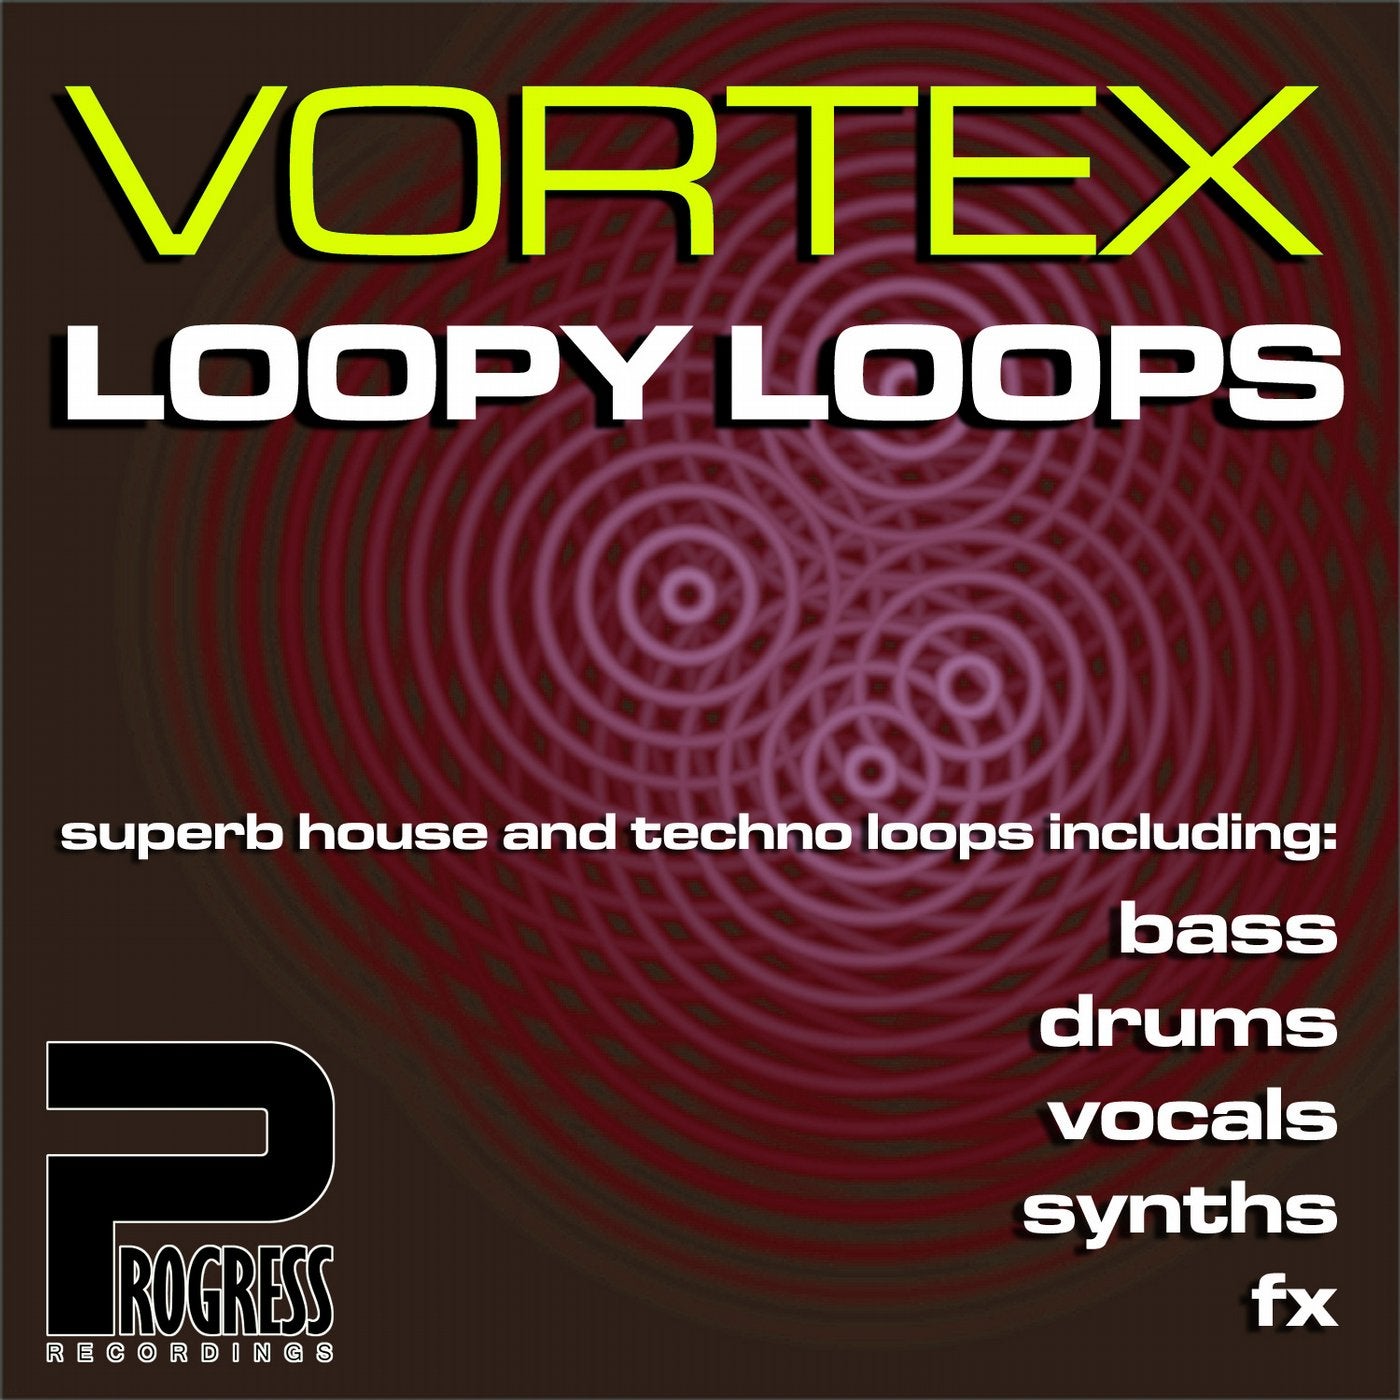 Vortex Loopy Loops Volume 9